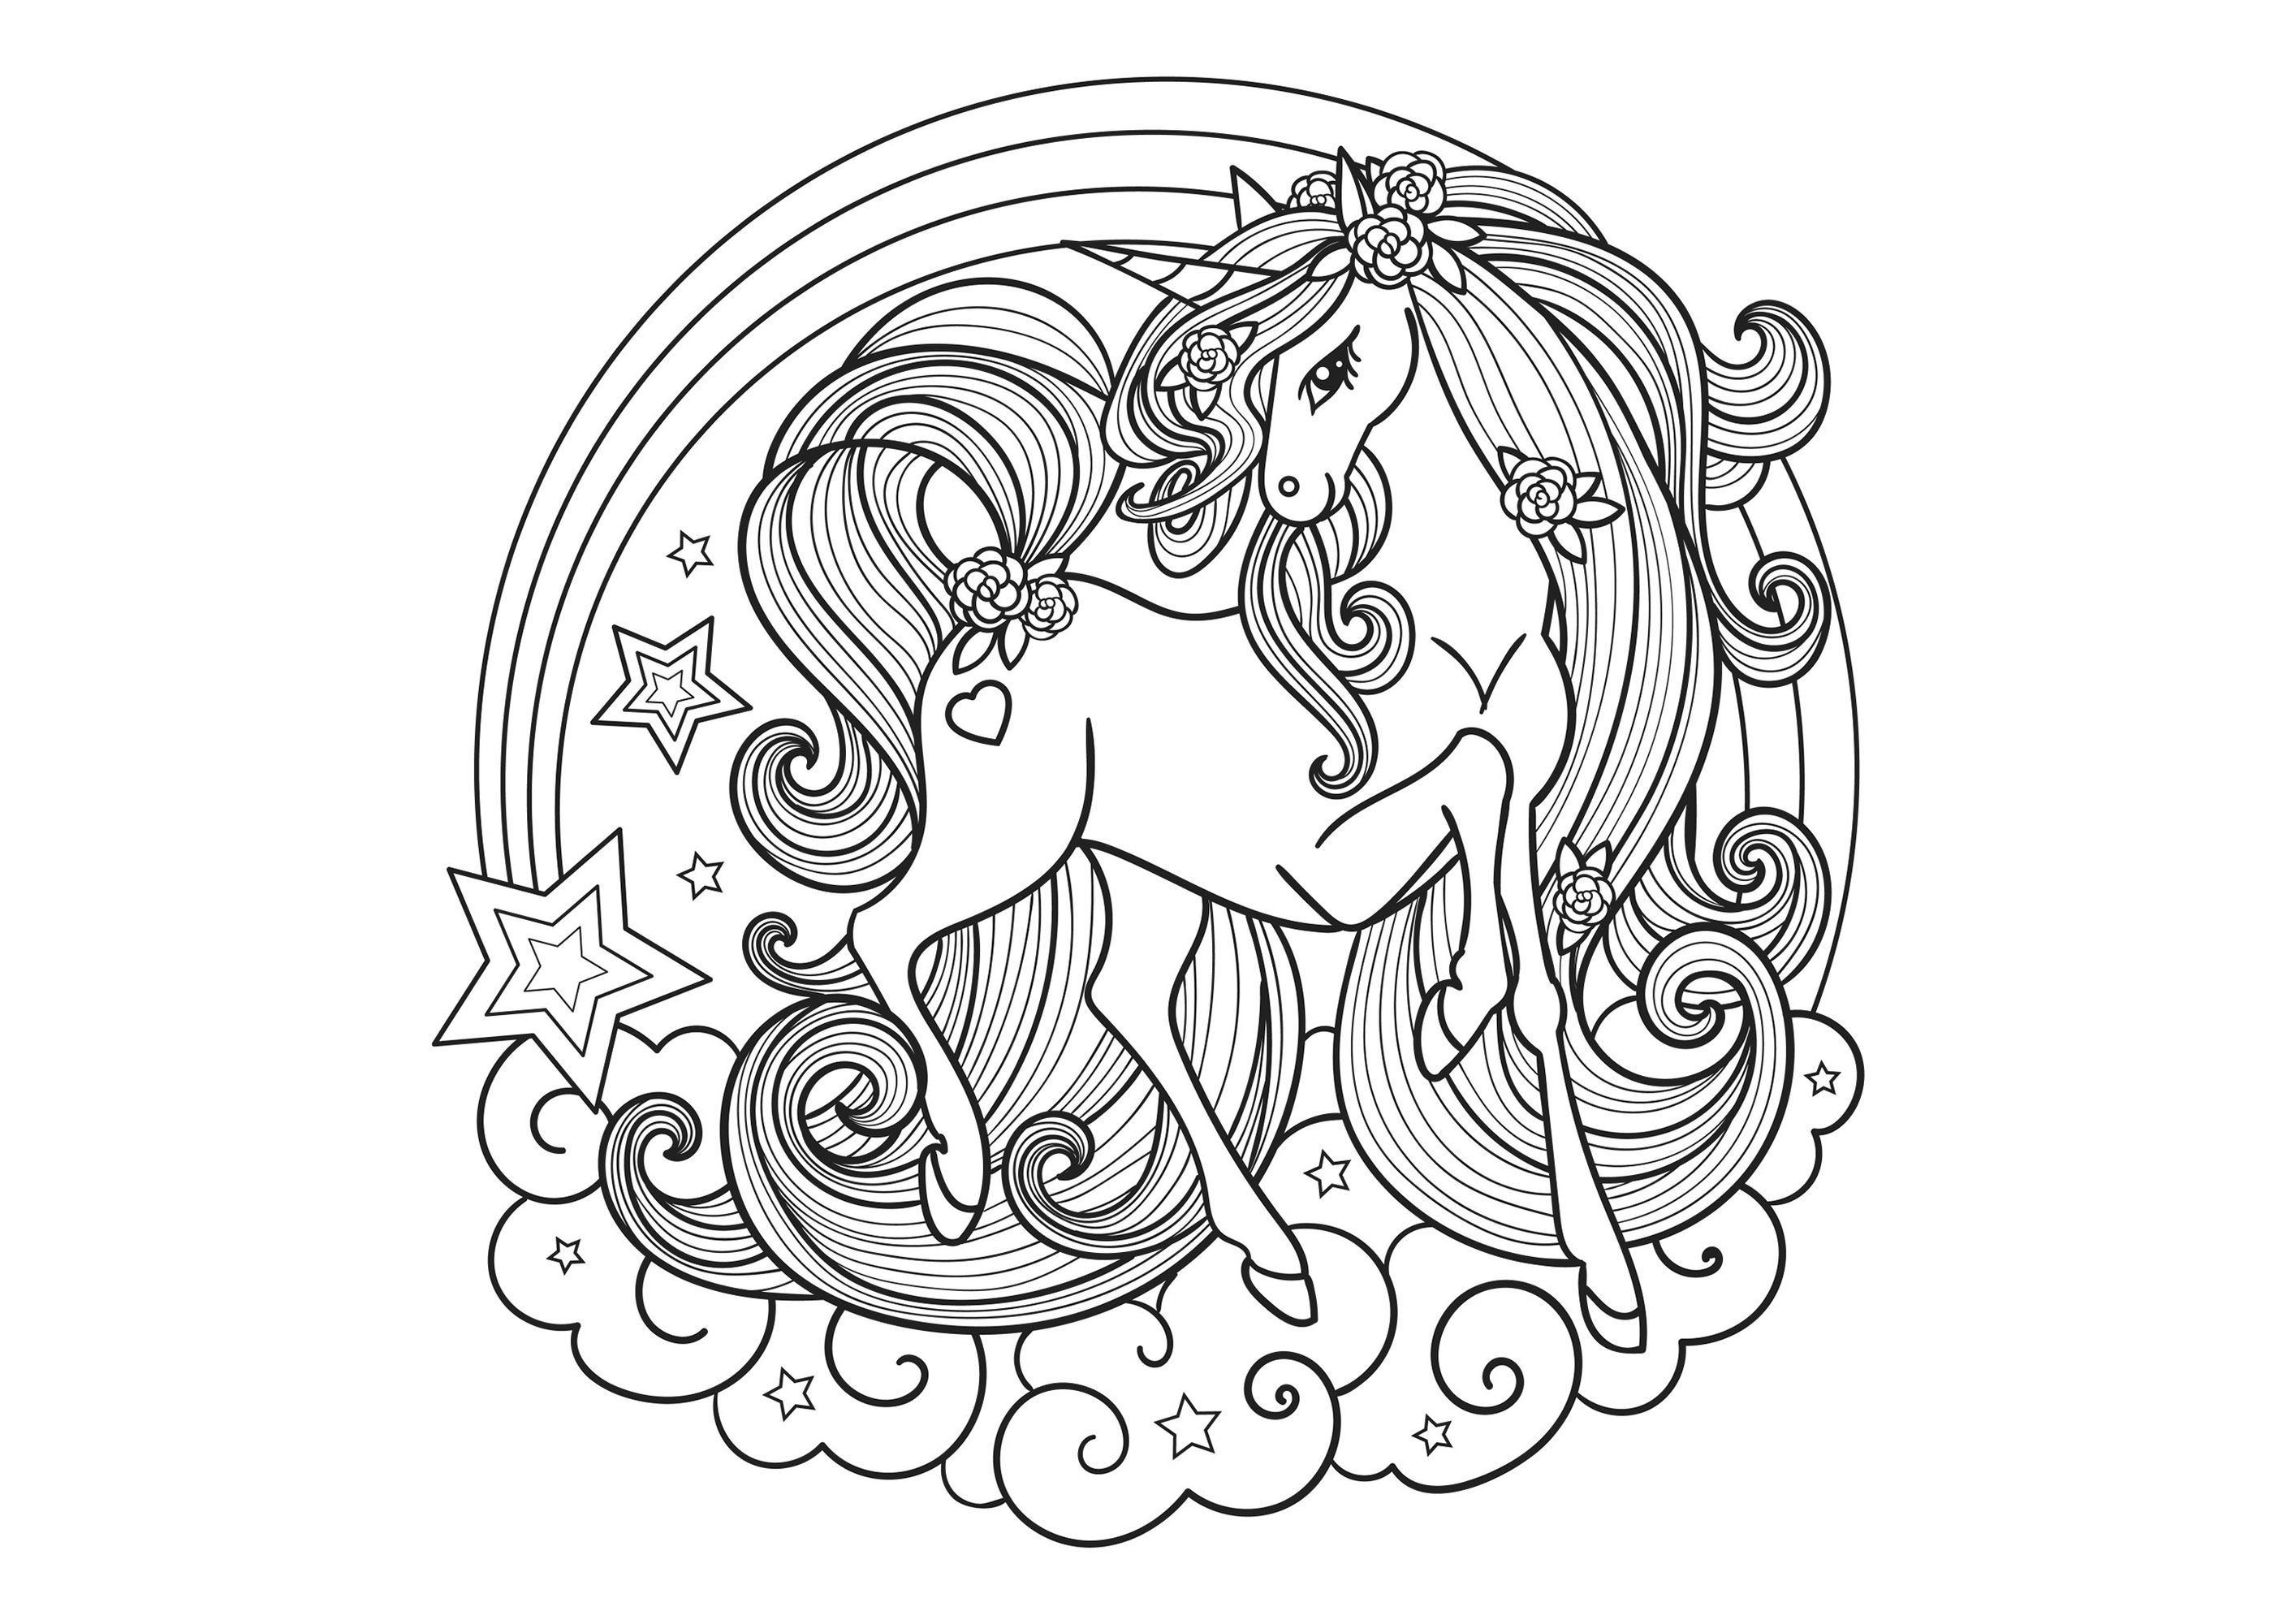 Belle et élégante licorne, au sein d'un Mandala constitué de nuages et d'une étoile filante, Artiste : Zerlina1973   Source : 123rf